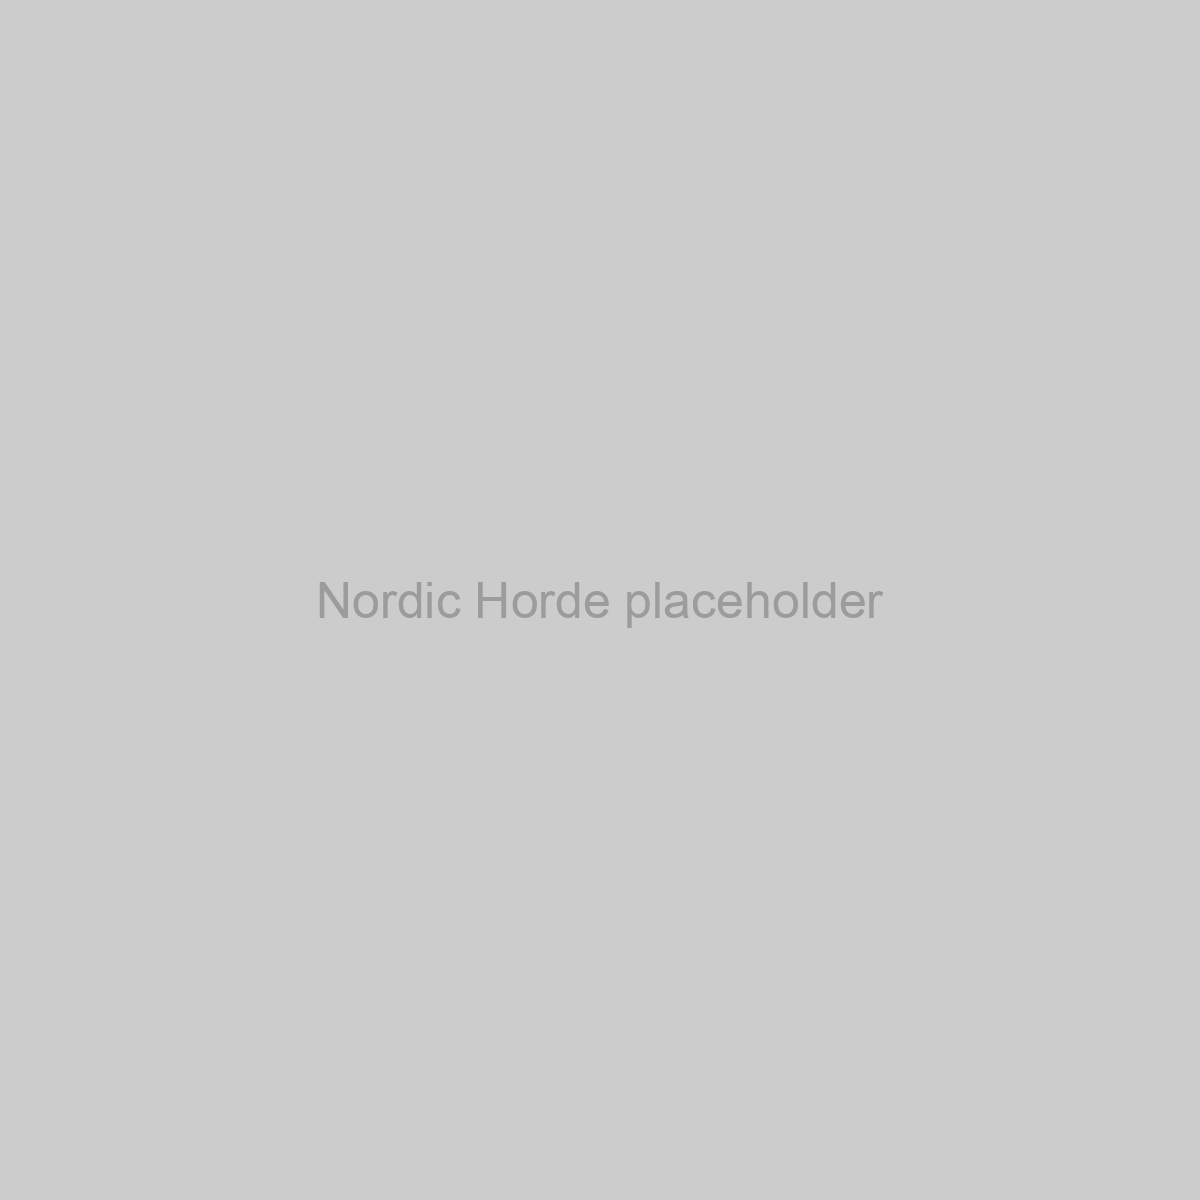 Nordic Horde Placeholder Image